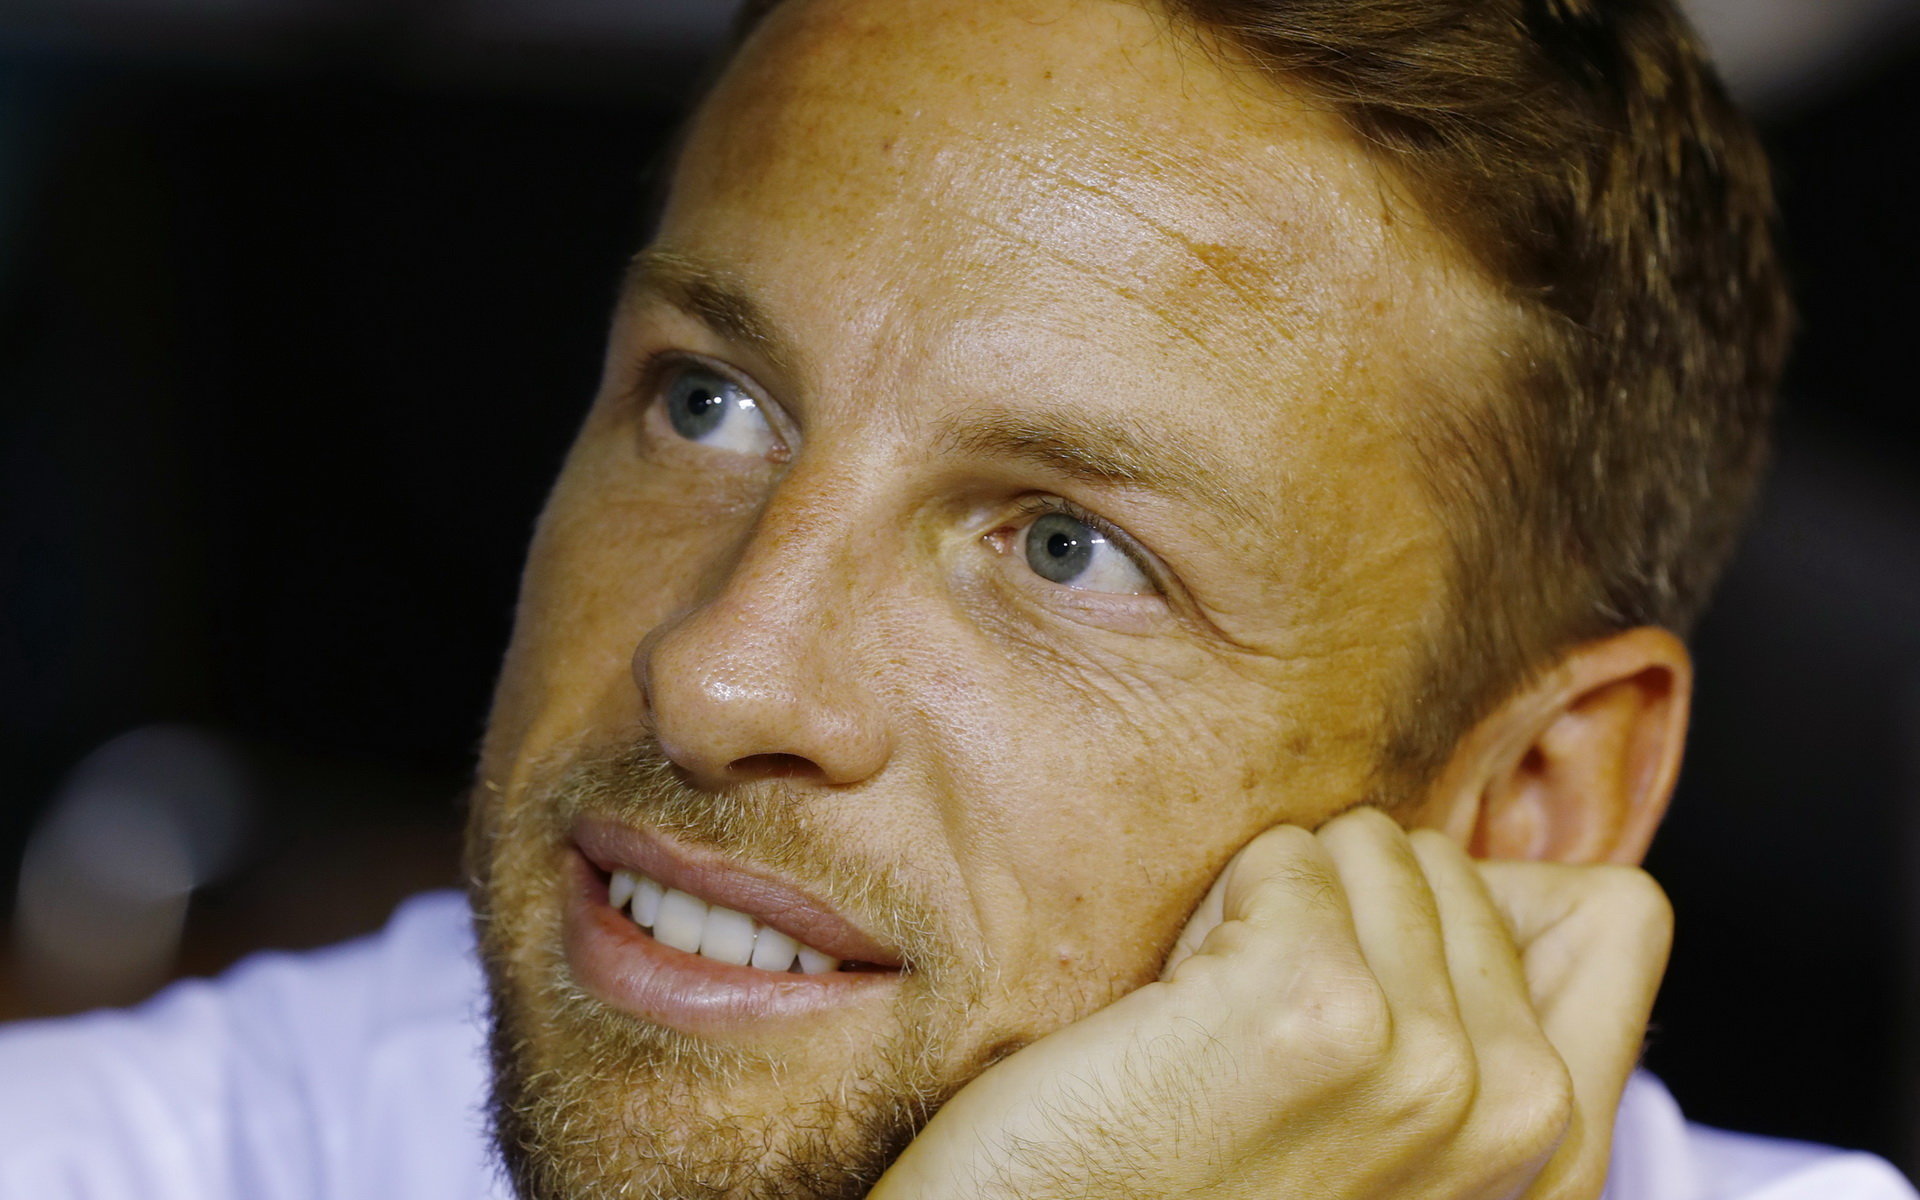 Jenson Button nezná žádného jezdce, který by byl v poslední době testován na doping